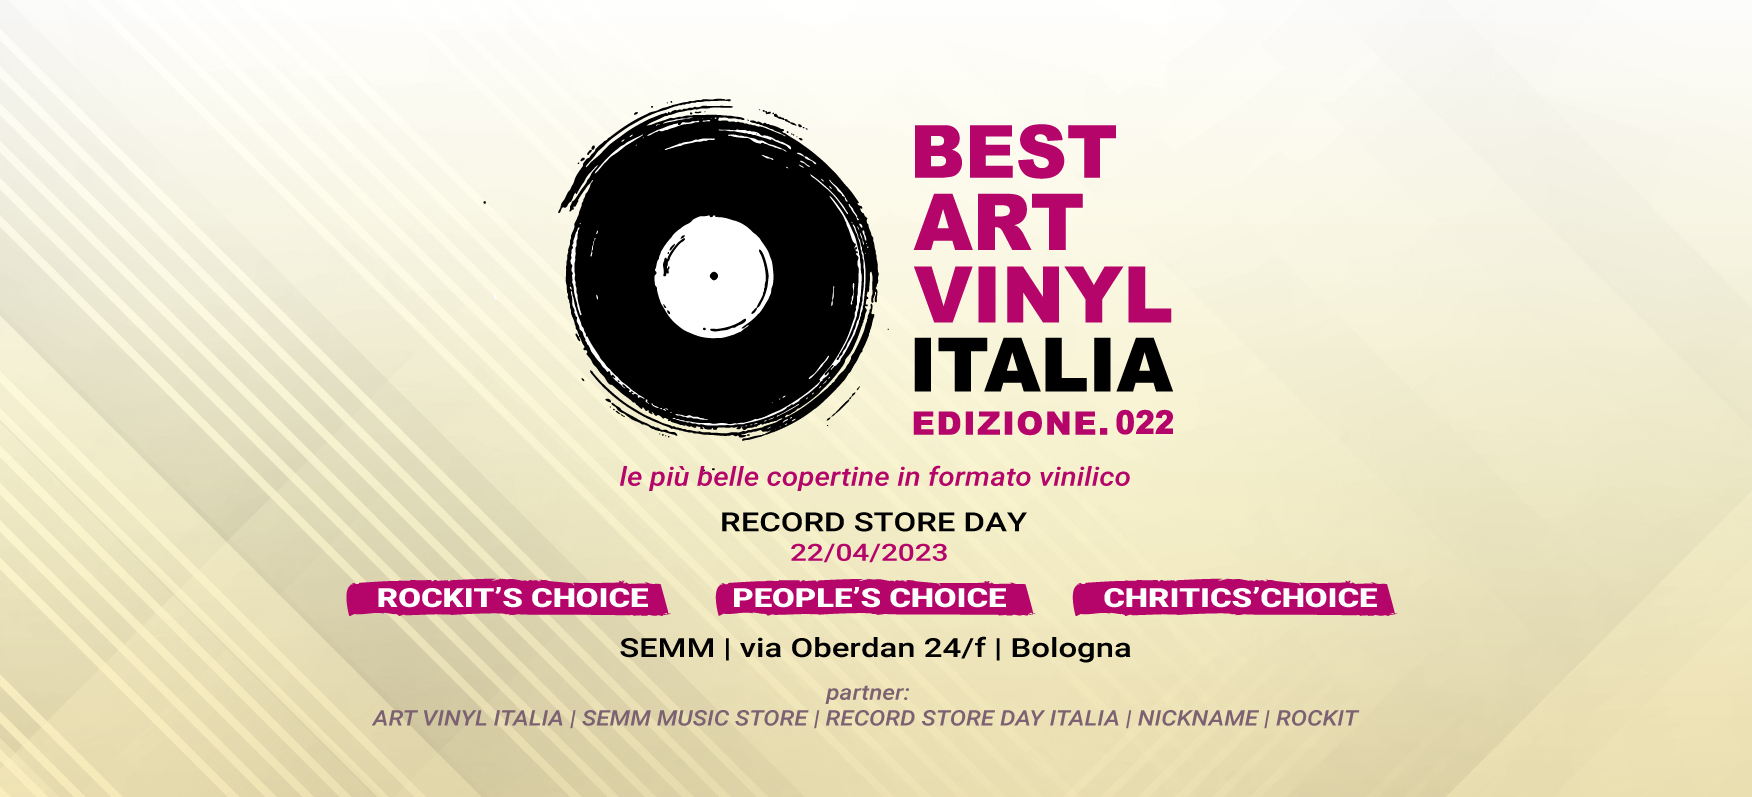 Best Art Vinyl Italia Edizione 022 le più belle copertine in formato vinilico Record Store Day 22/04/2023 SEMM Music Store Bologna via Oberdan 24/F